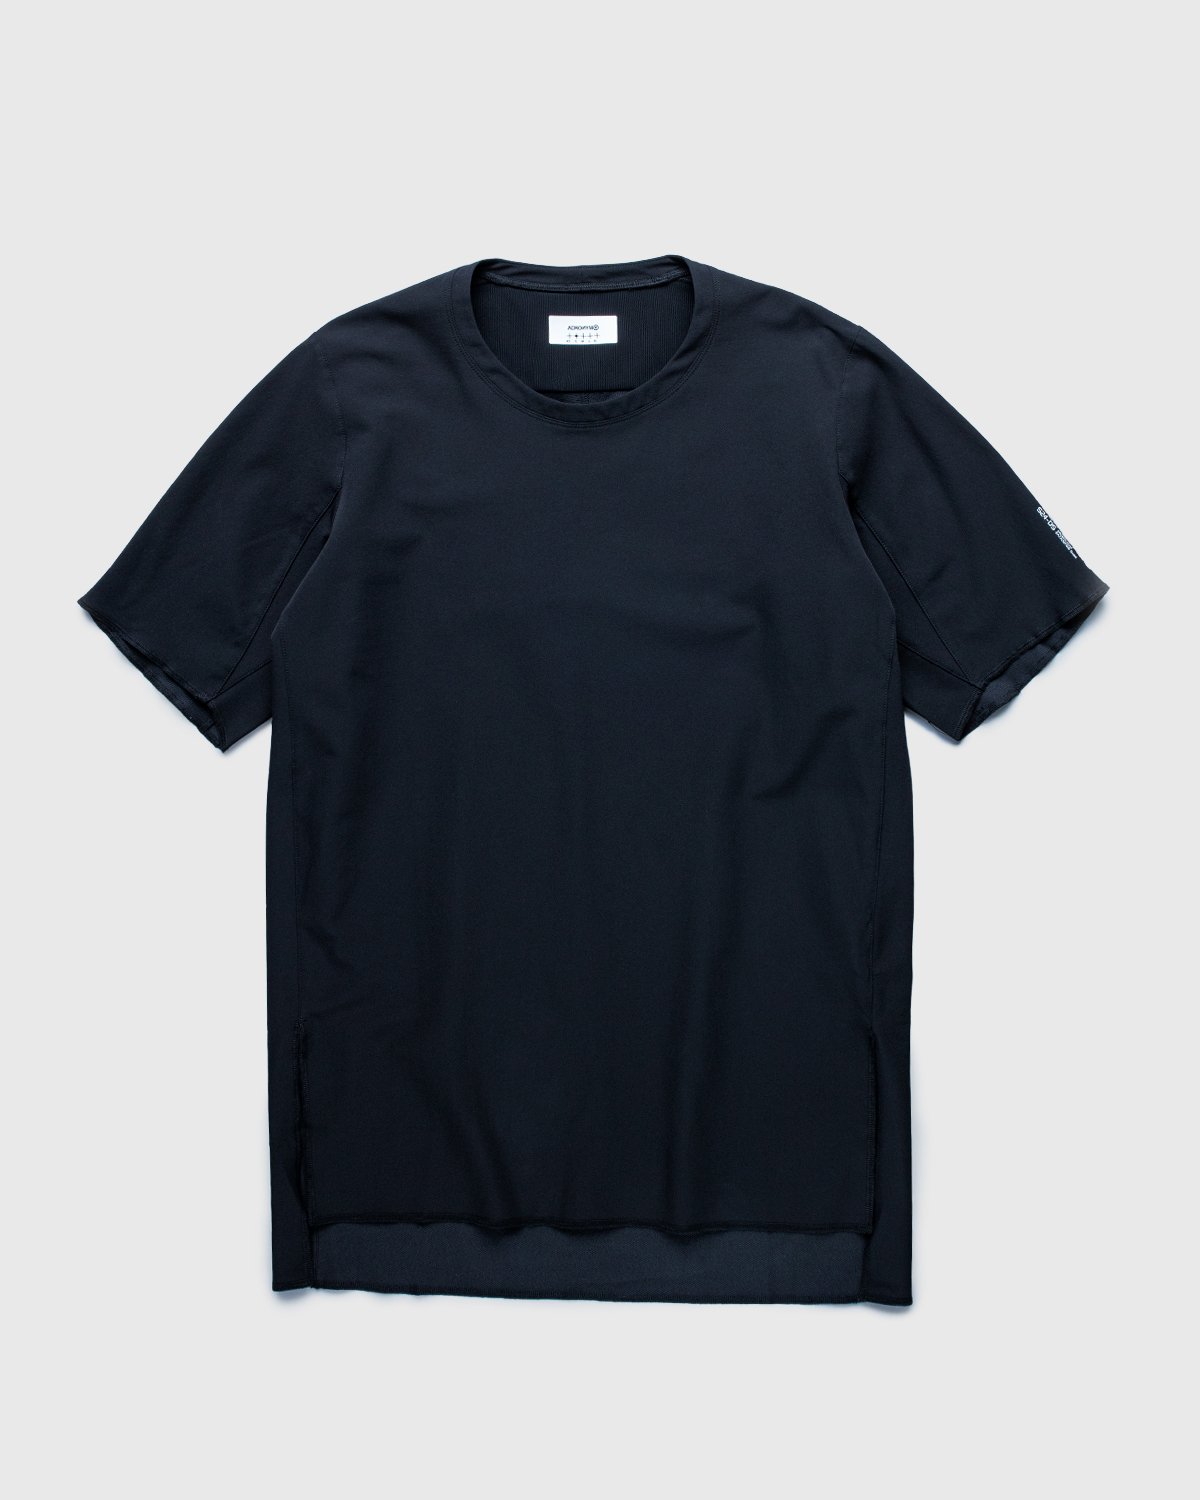 ACRONYM - S24-DS Short Sleeve Black - Clothing - Black - Image 1